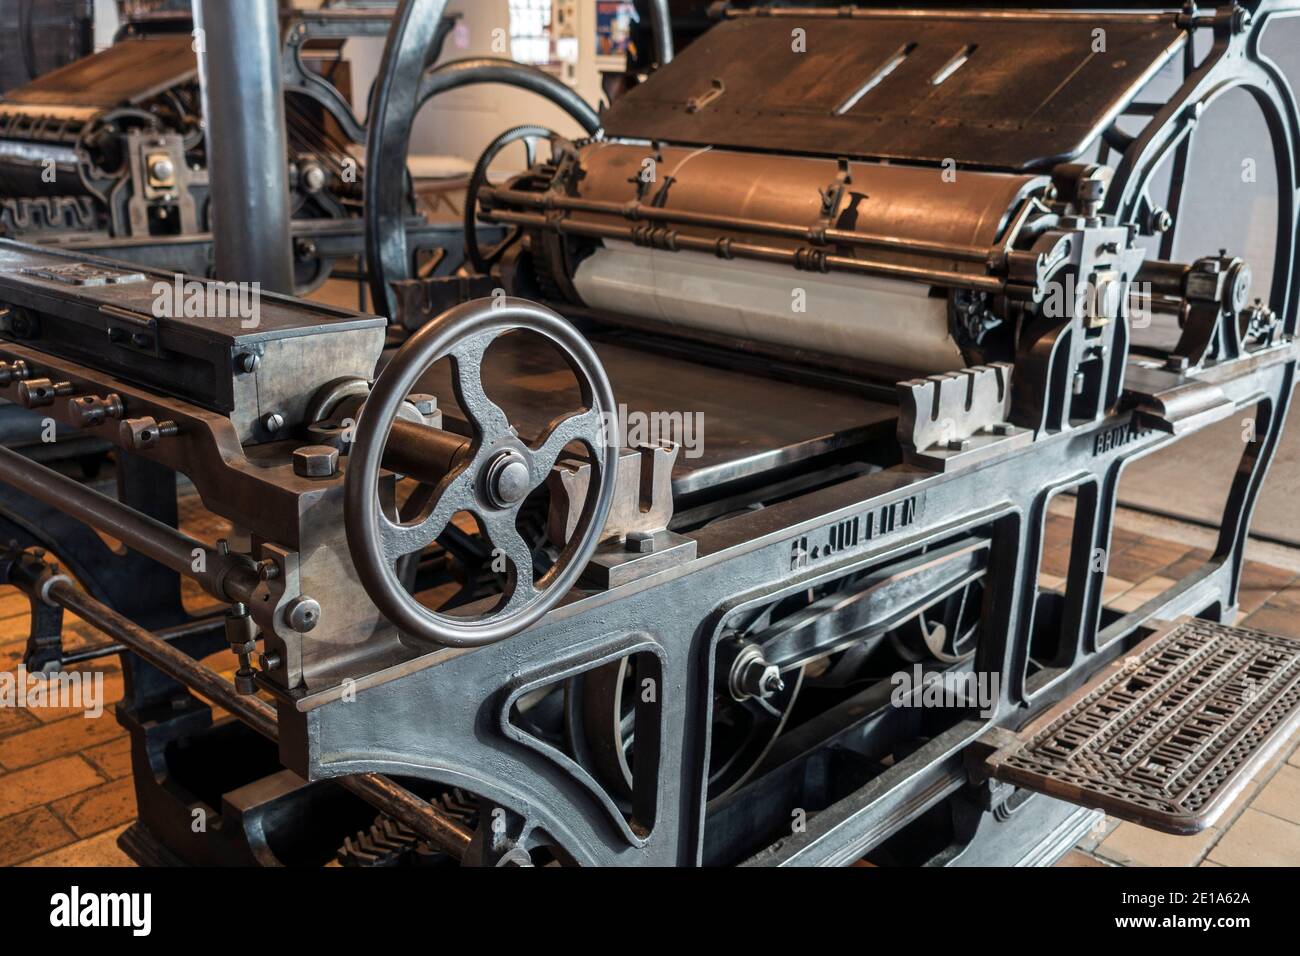 Presse cylindre d'arrêt en fonte fin du XIXe siècle entraînée par un moteur à vapeur fabriqué par H. Jullien, Bruxelles Banque D'Images